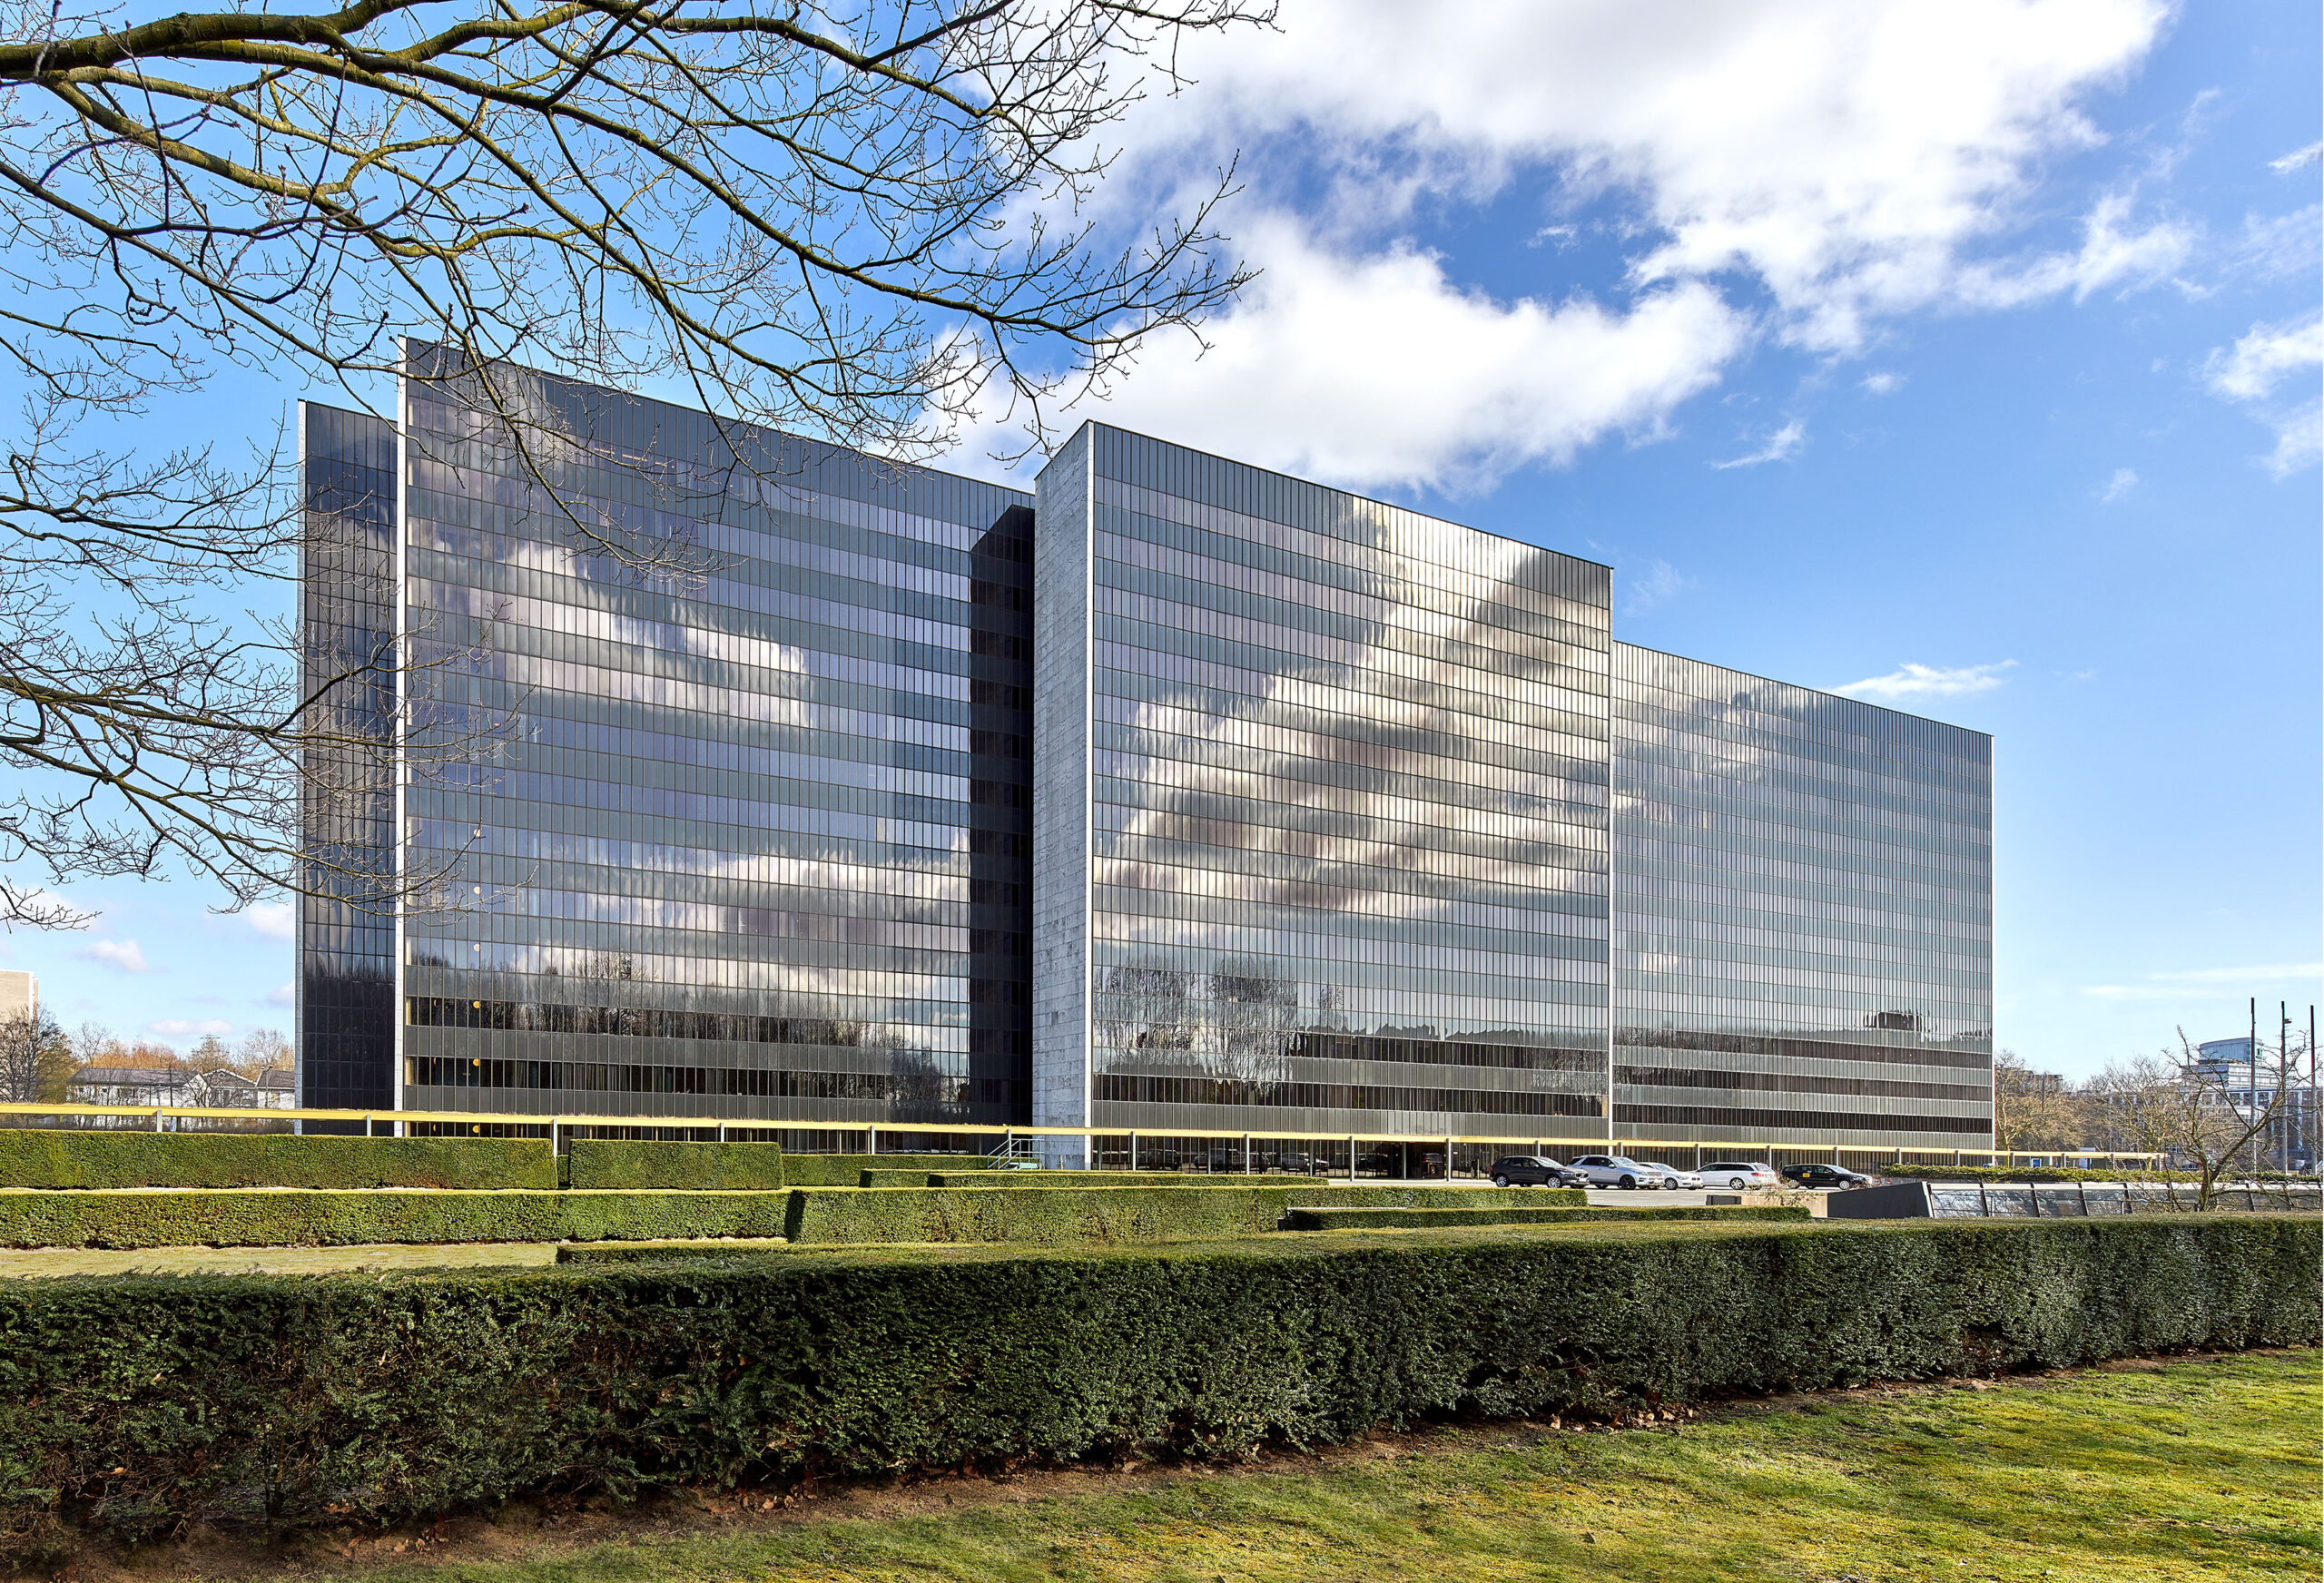 Architektur-Ikone in der Hamburger City Nord: Das Vattenfall-Gebäude von Arne Jacobsen soll saniert werden.